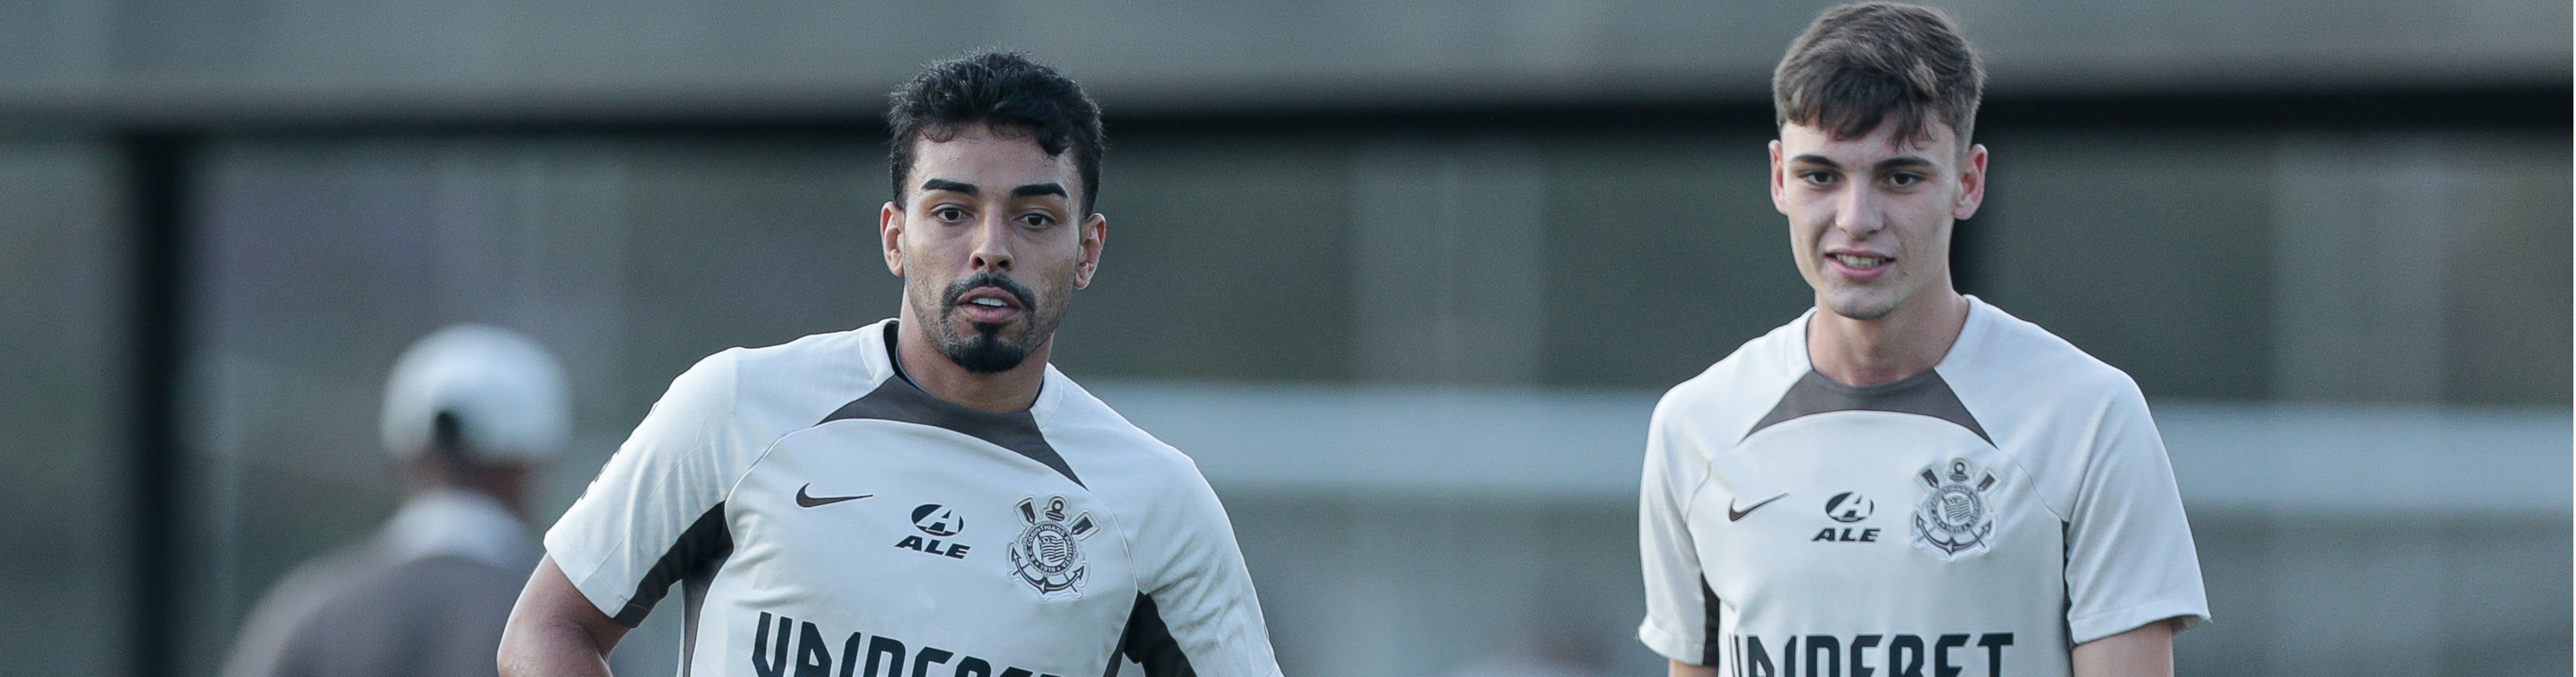 Futebol masculino: Timão segue preparação para encarar Flamengo